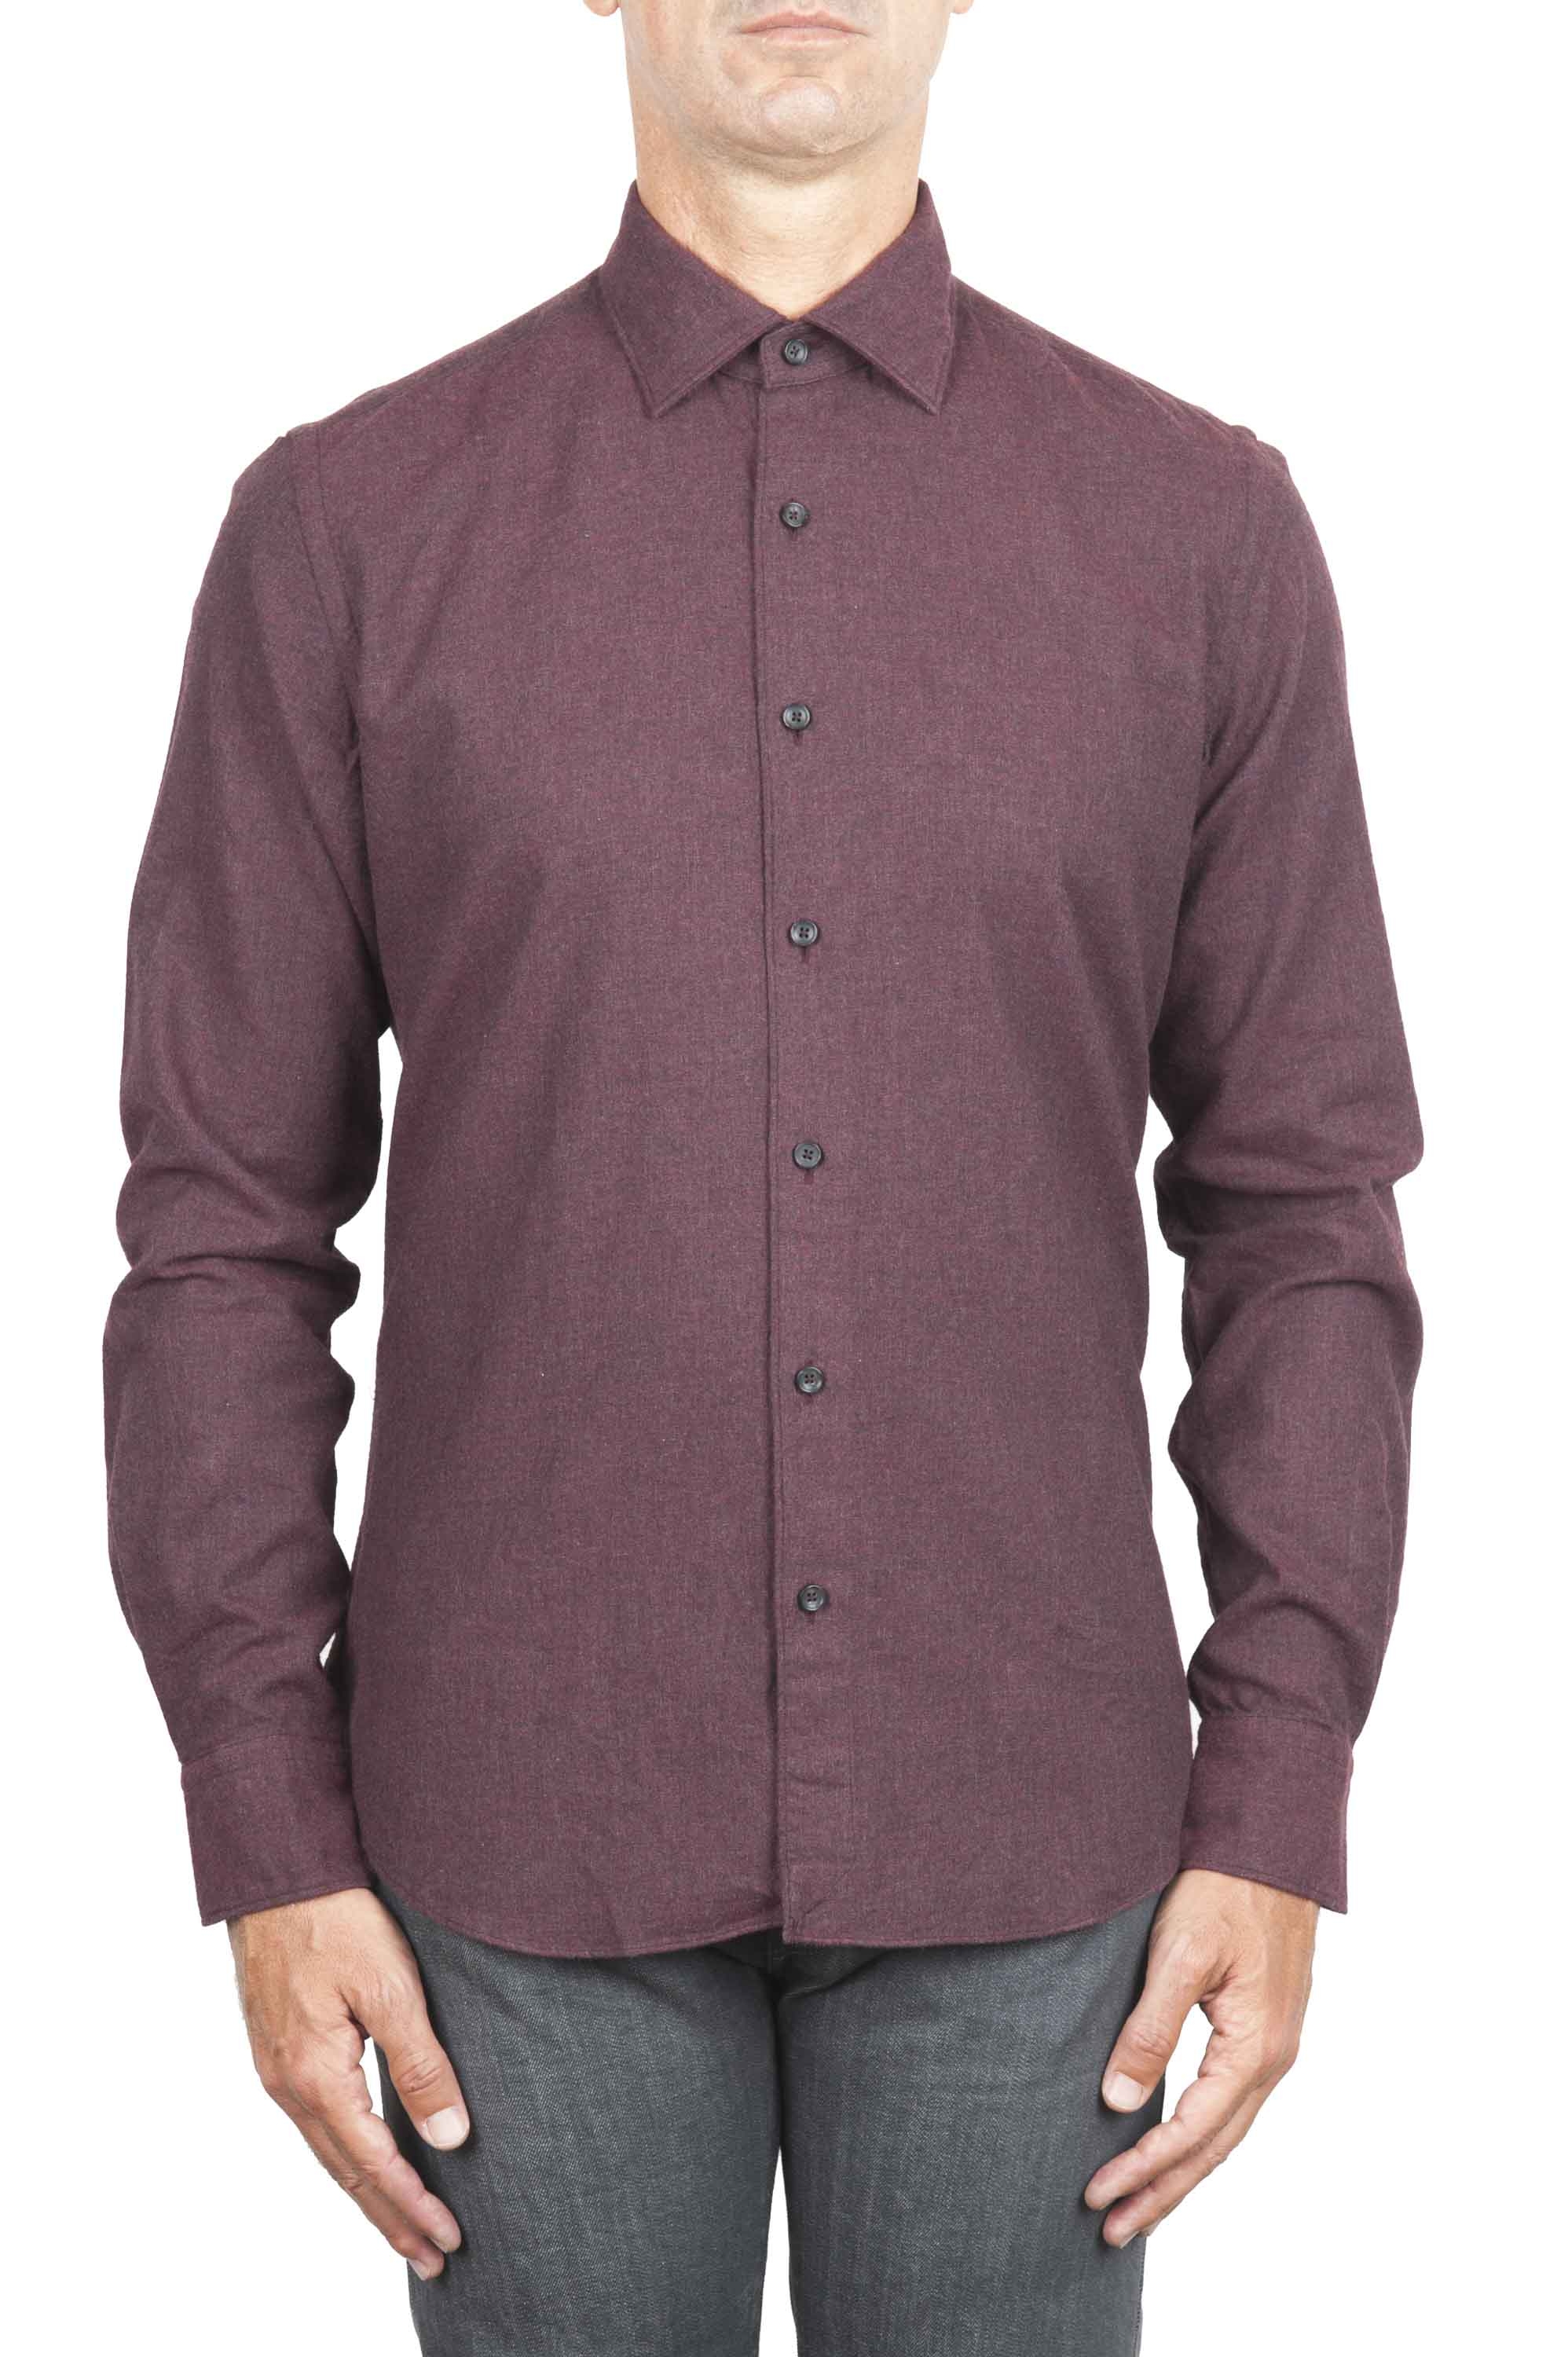 SBU 01310 Plain soft cotton caret flannel shirt 01